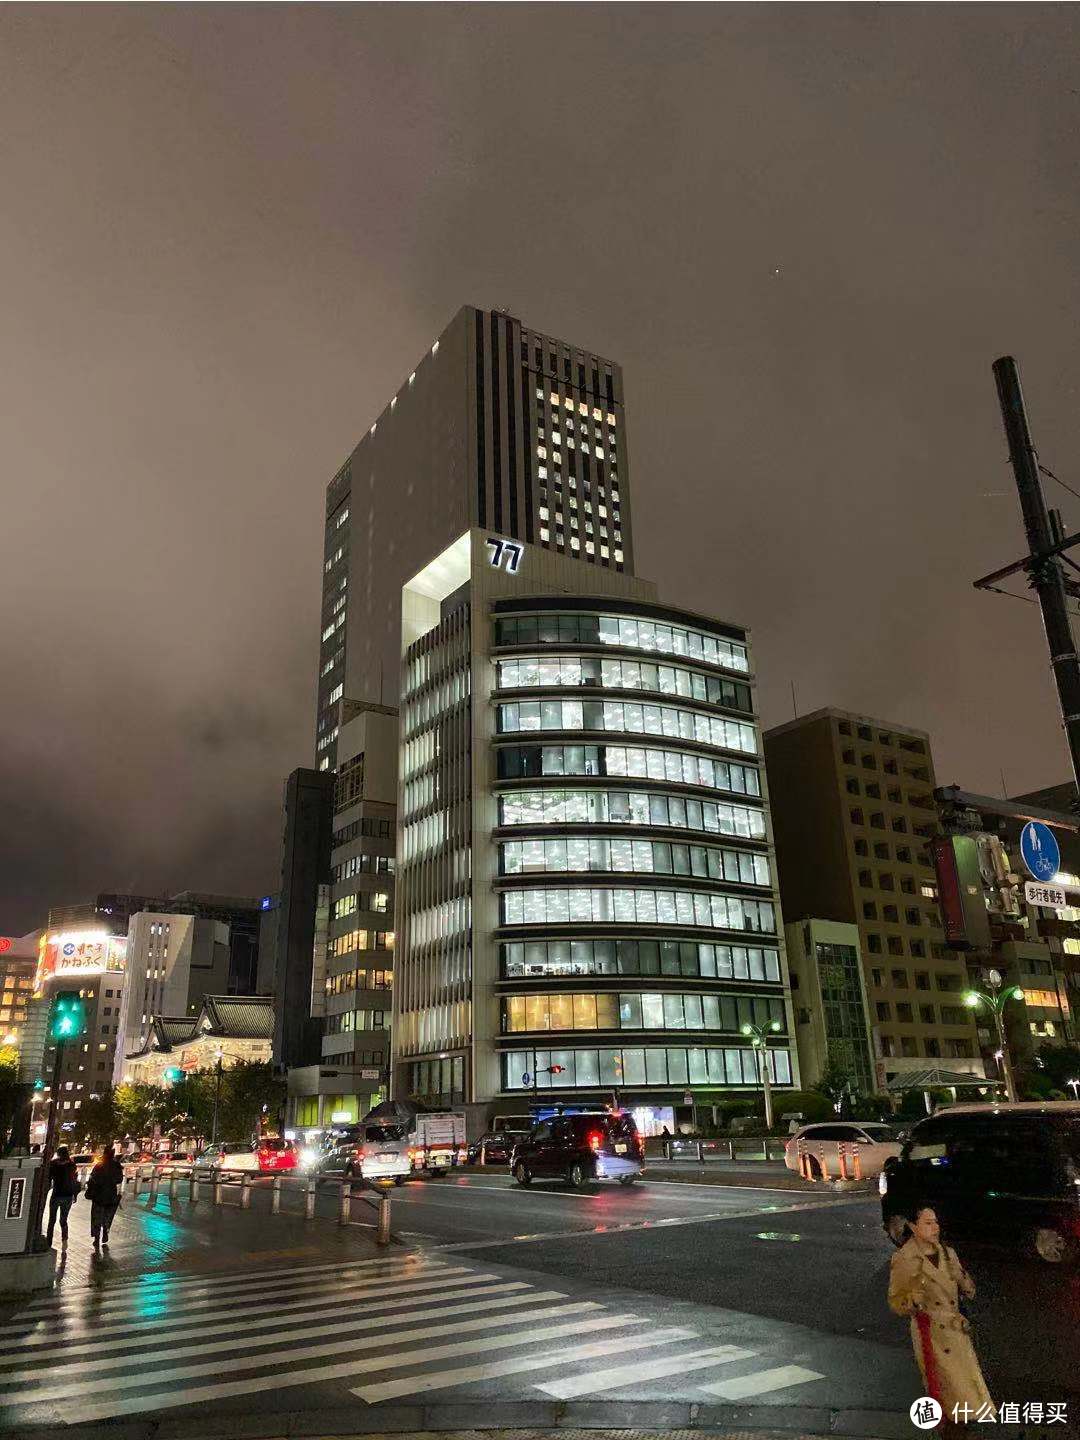 日本-新宿 夜间模式样片